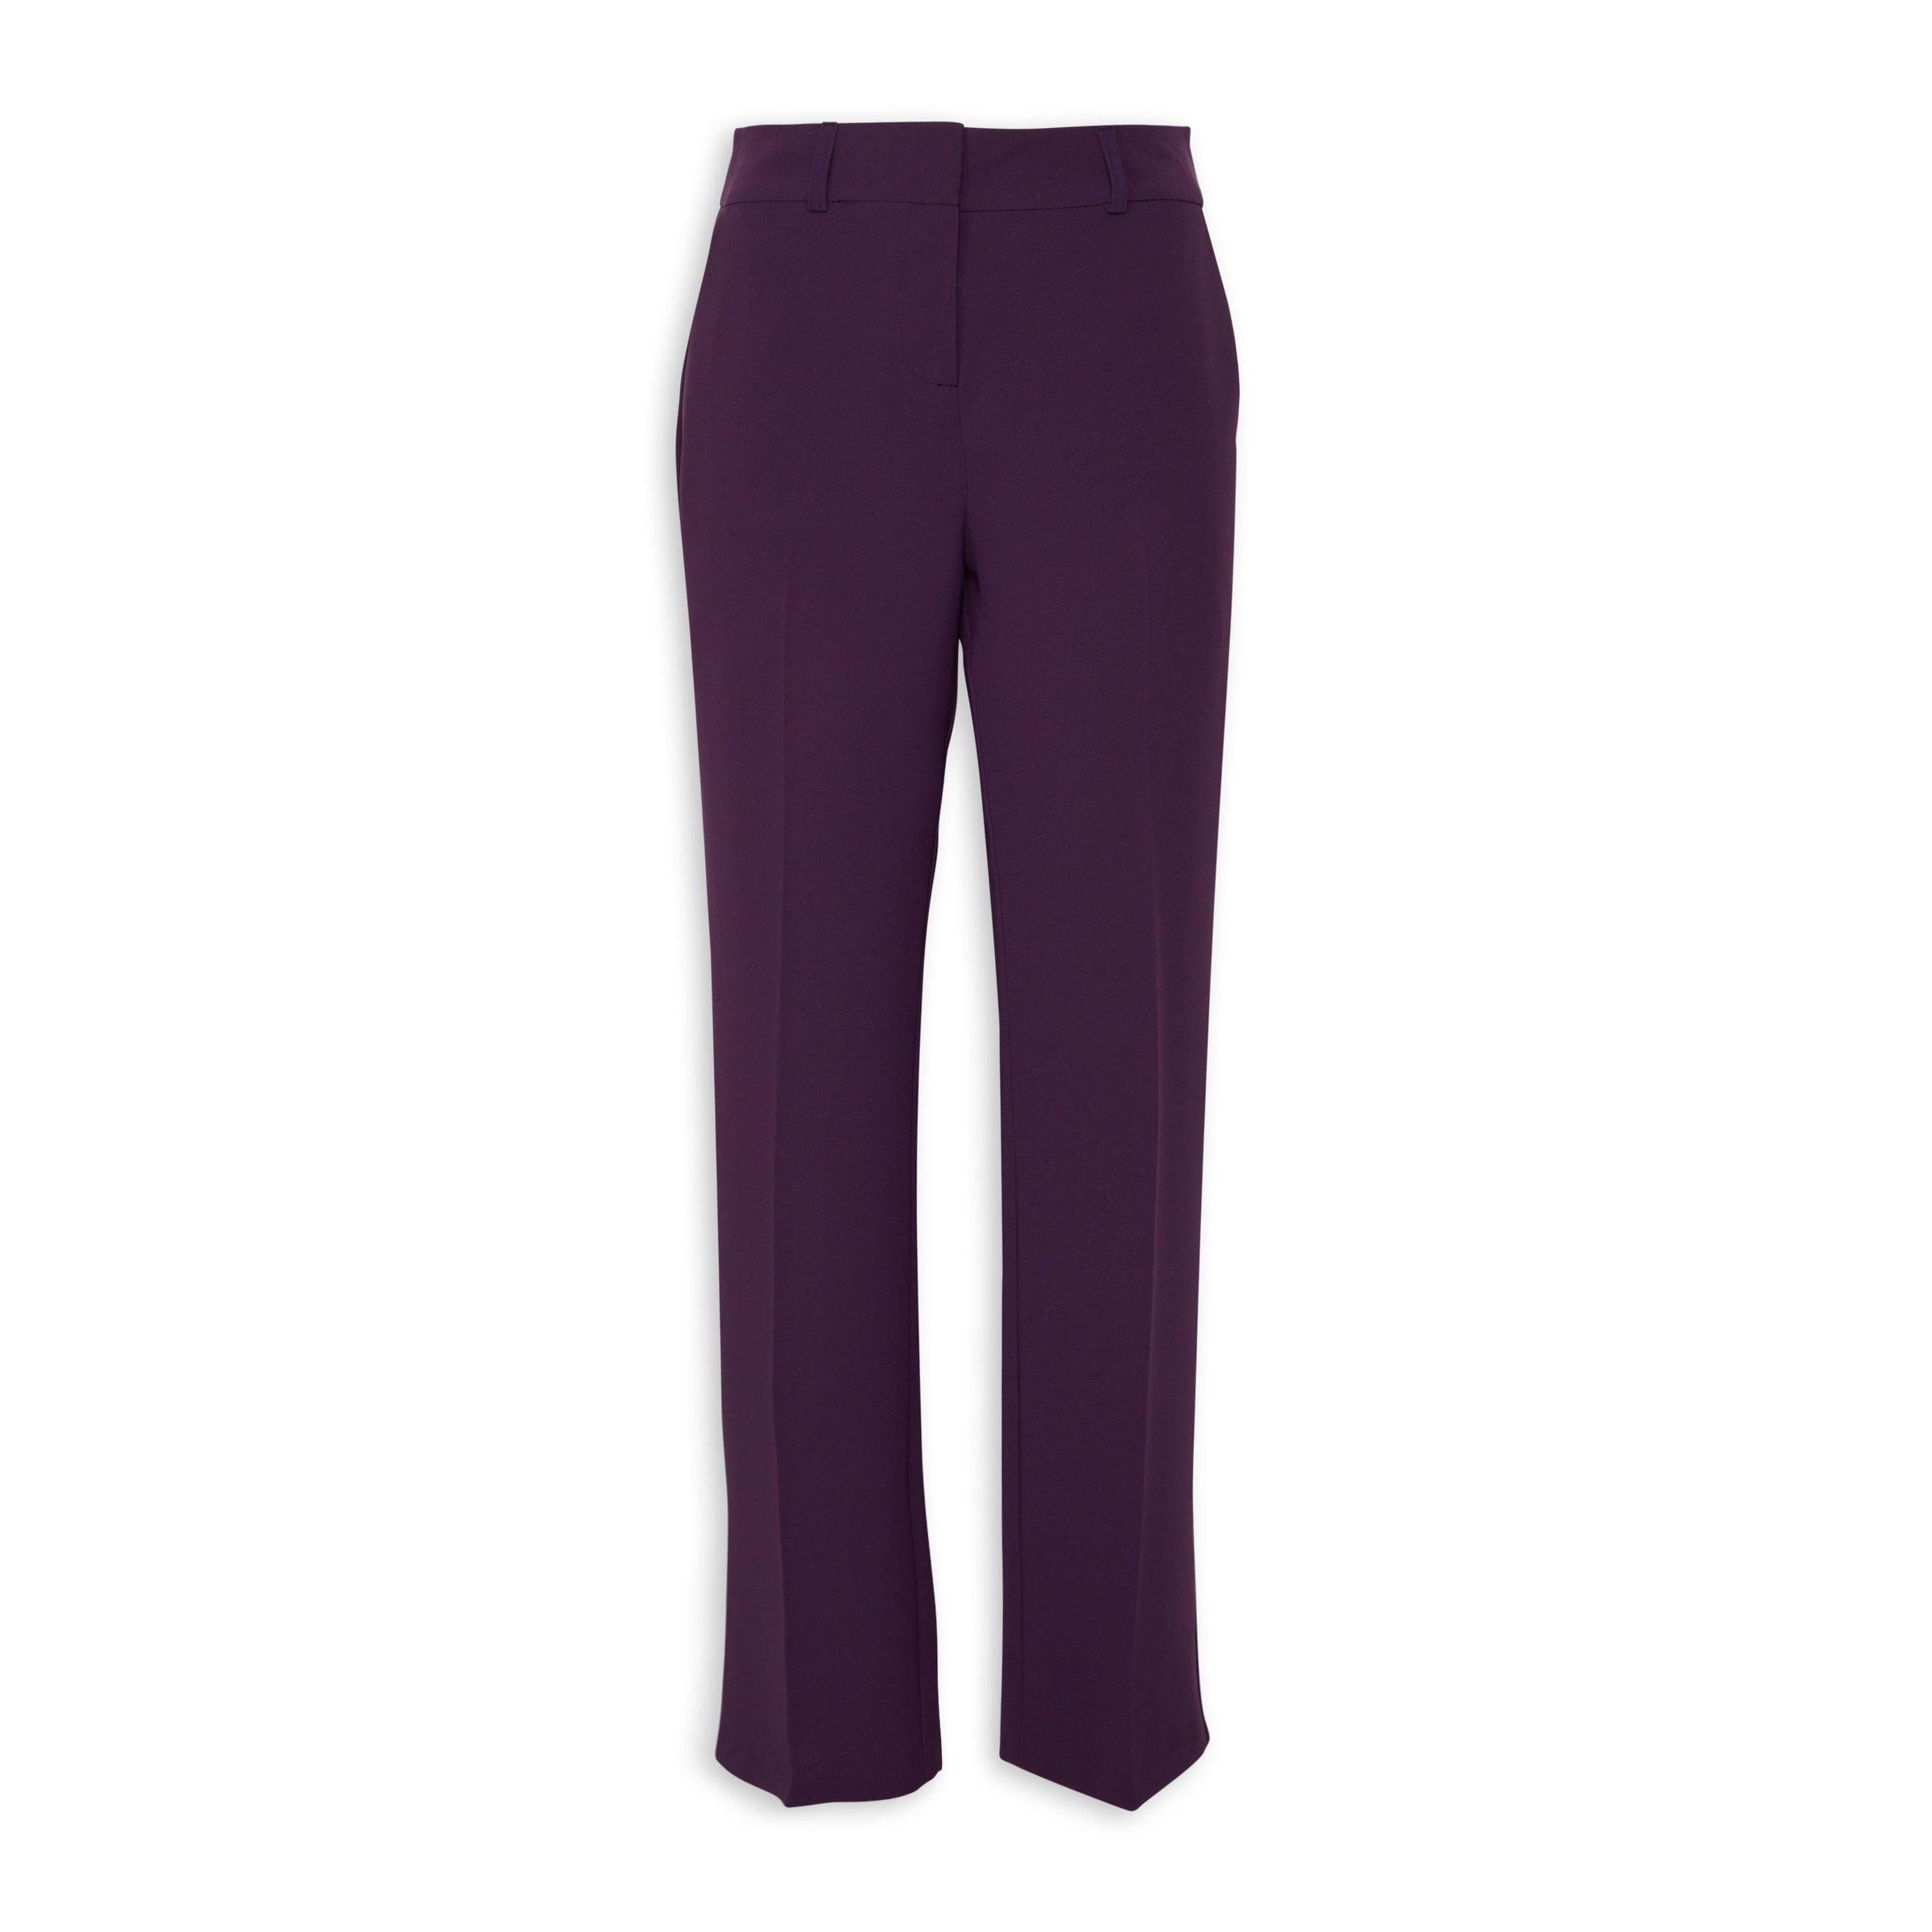 Purple Pants For Women